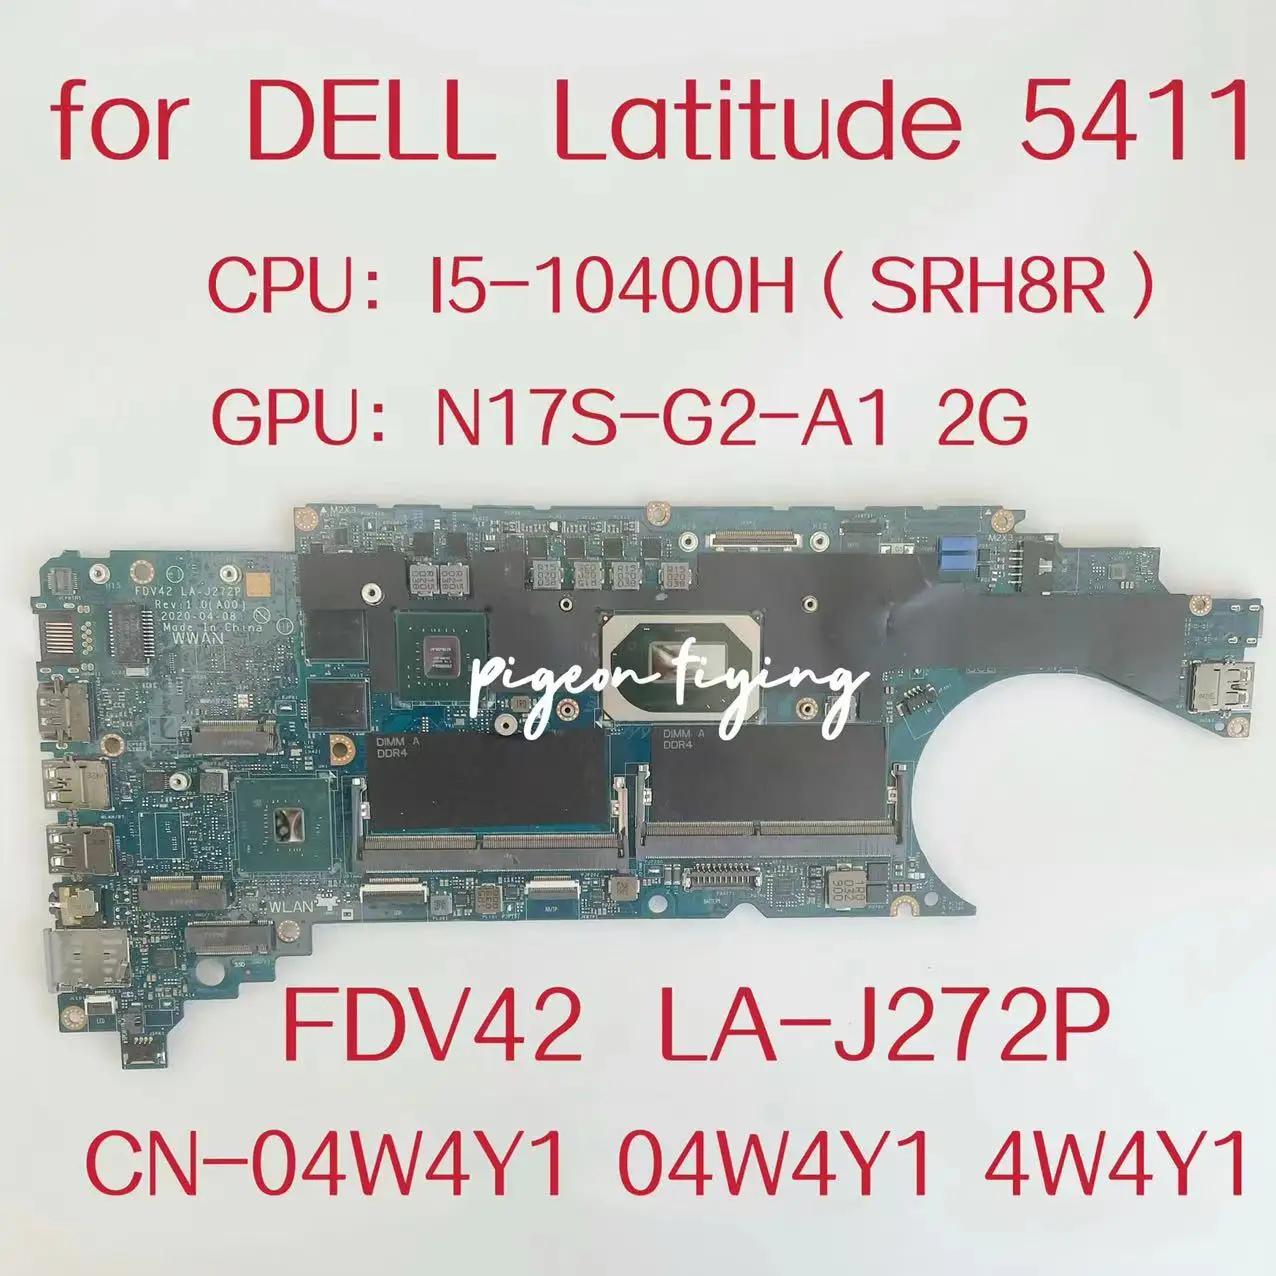  ƼƩ 5411 Ʈ  FDV42 LA-J272P κ, CPU:I5-10400H GPU:N17S-G2-A1 2G DDR4 CN-04W4Y1 04W4Y1 4W4Y1